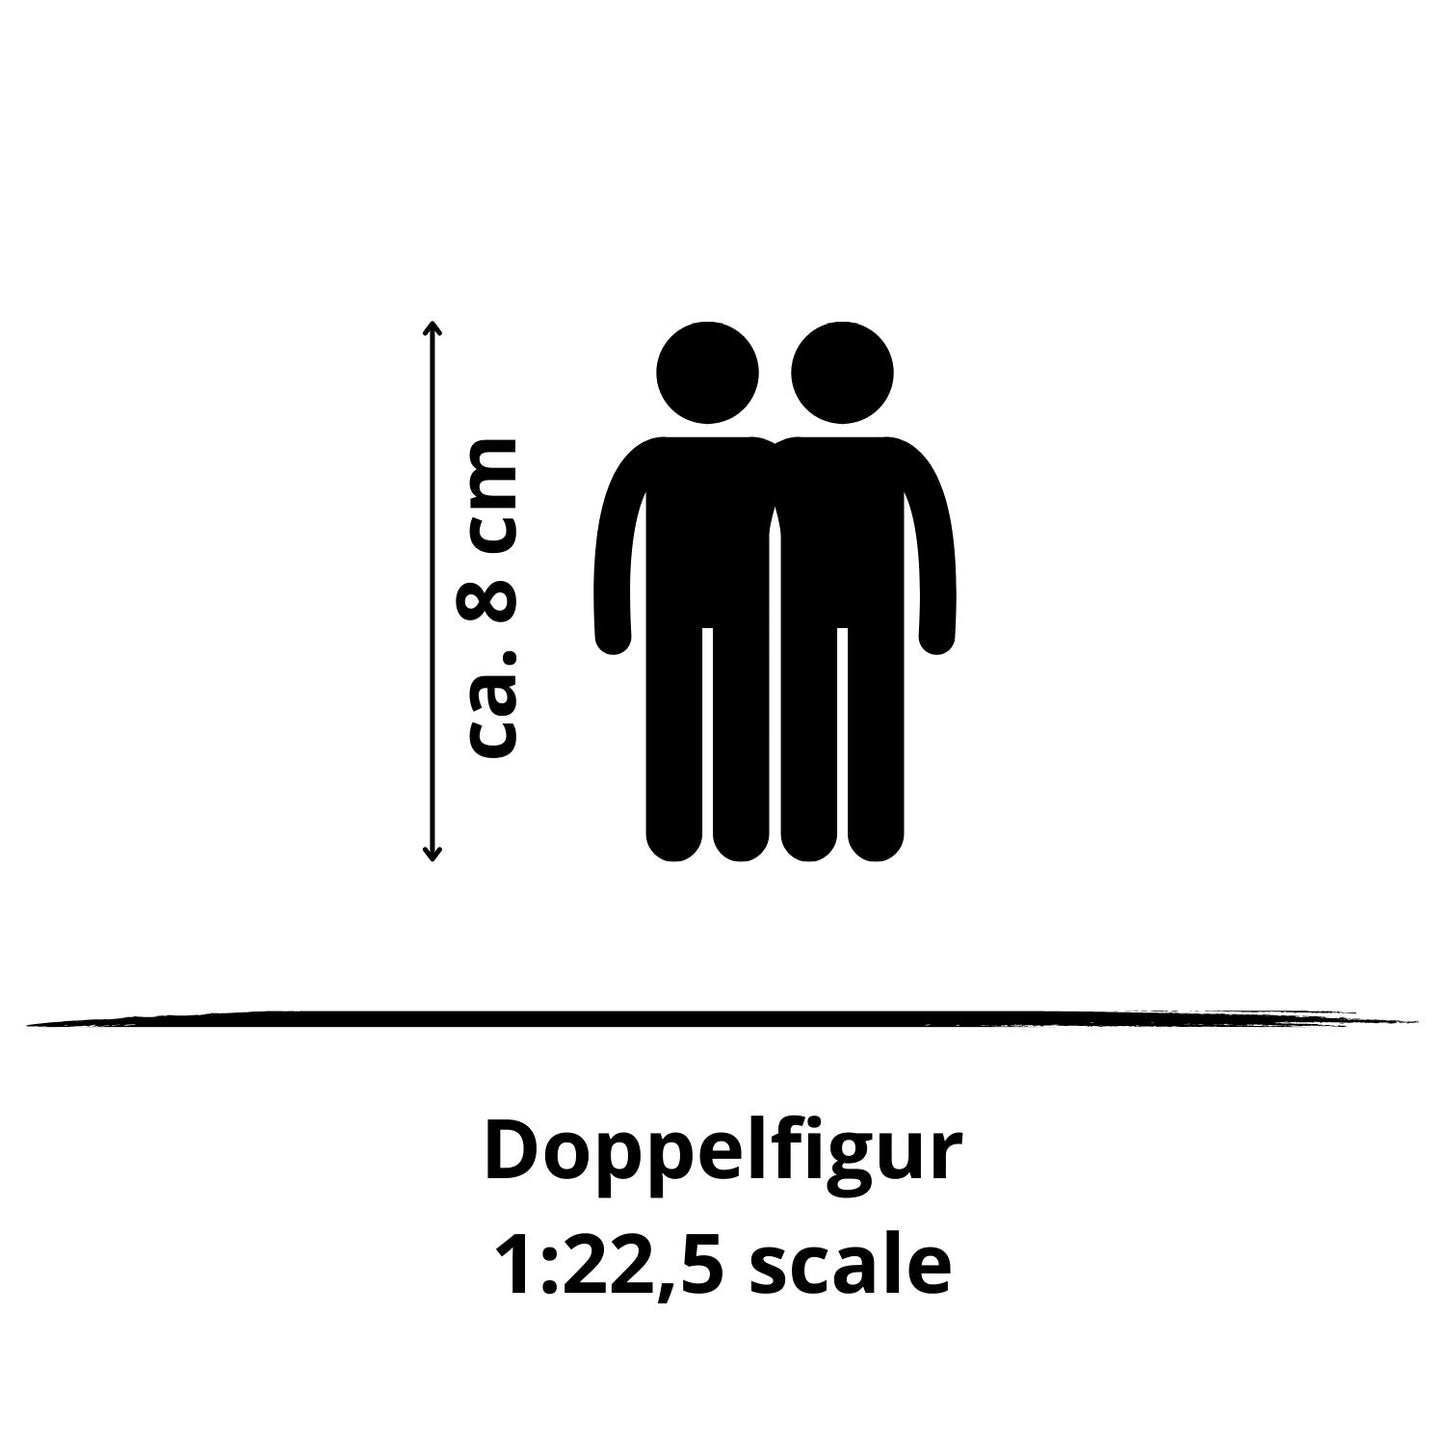 1:22.5 double figure